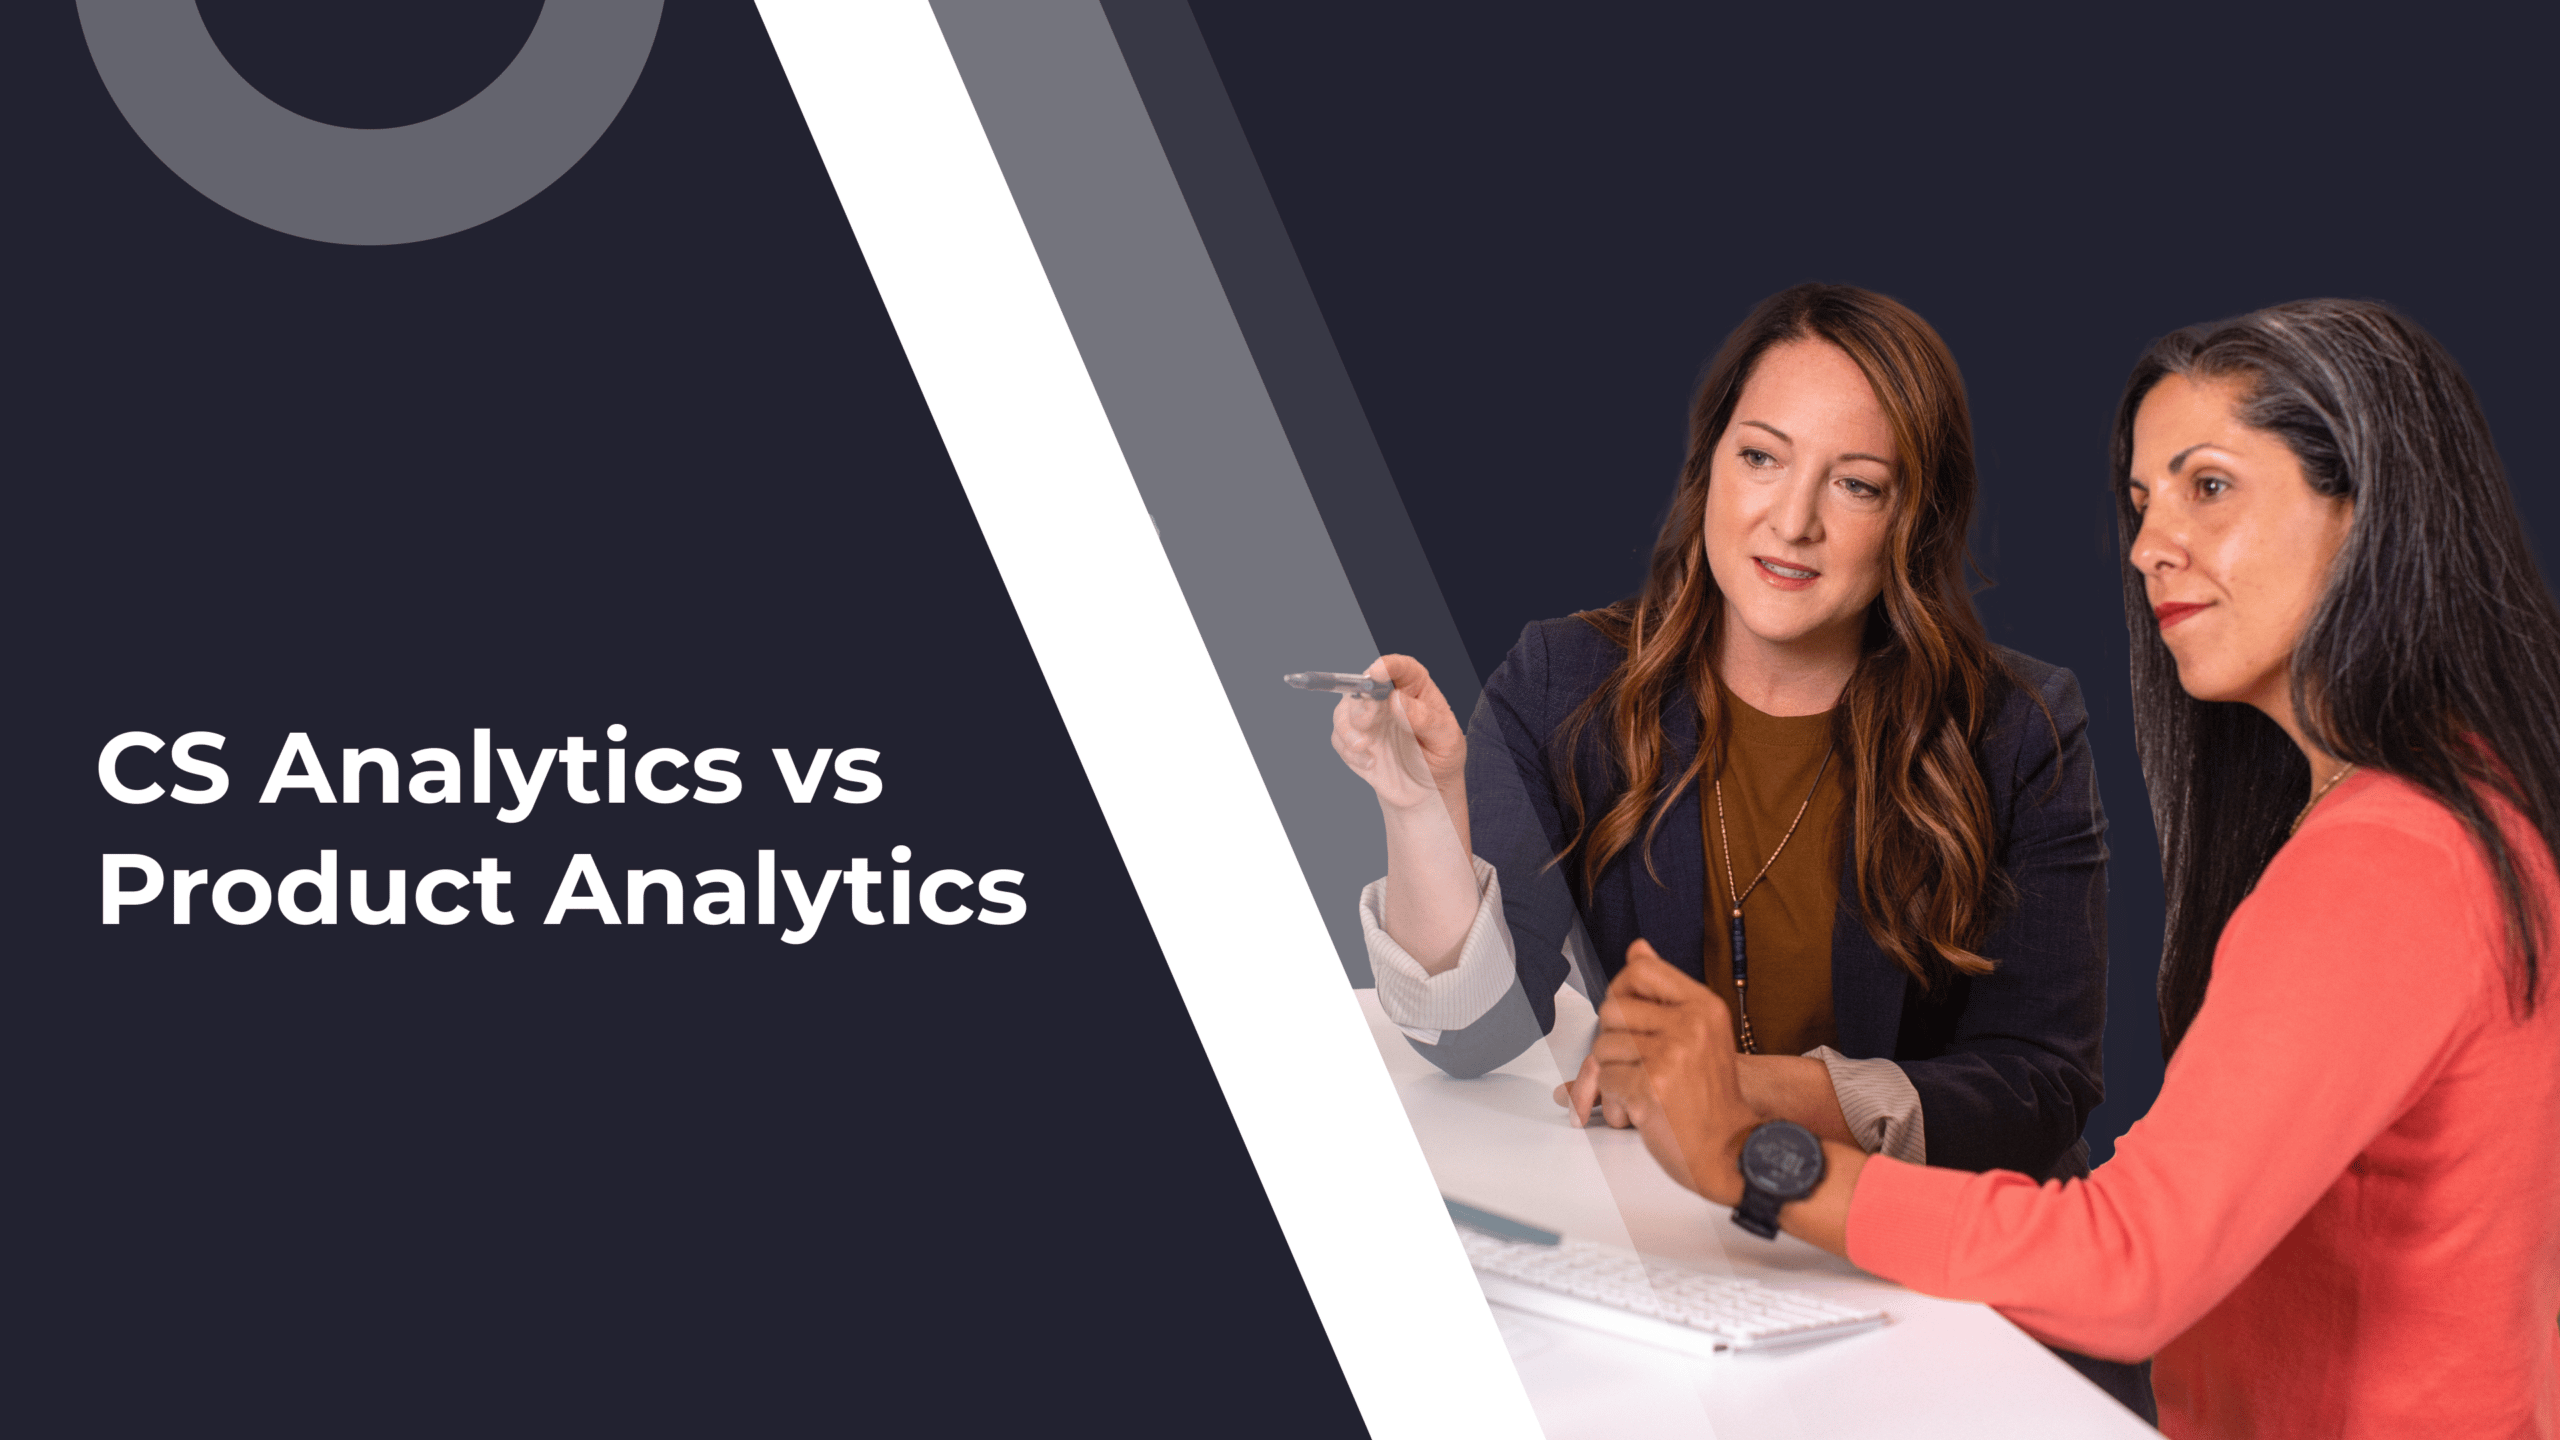 Using Customer Success Analytics vs Product Analytics